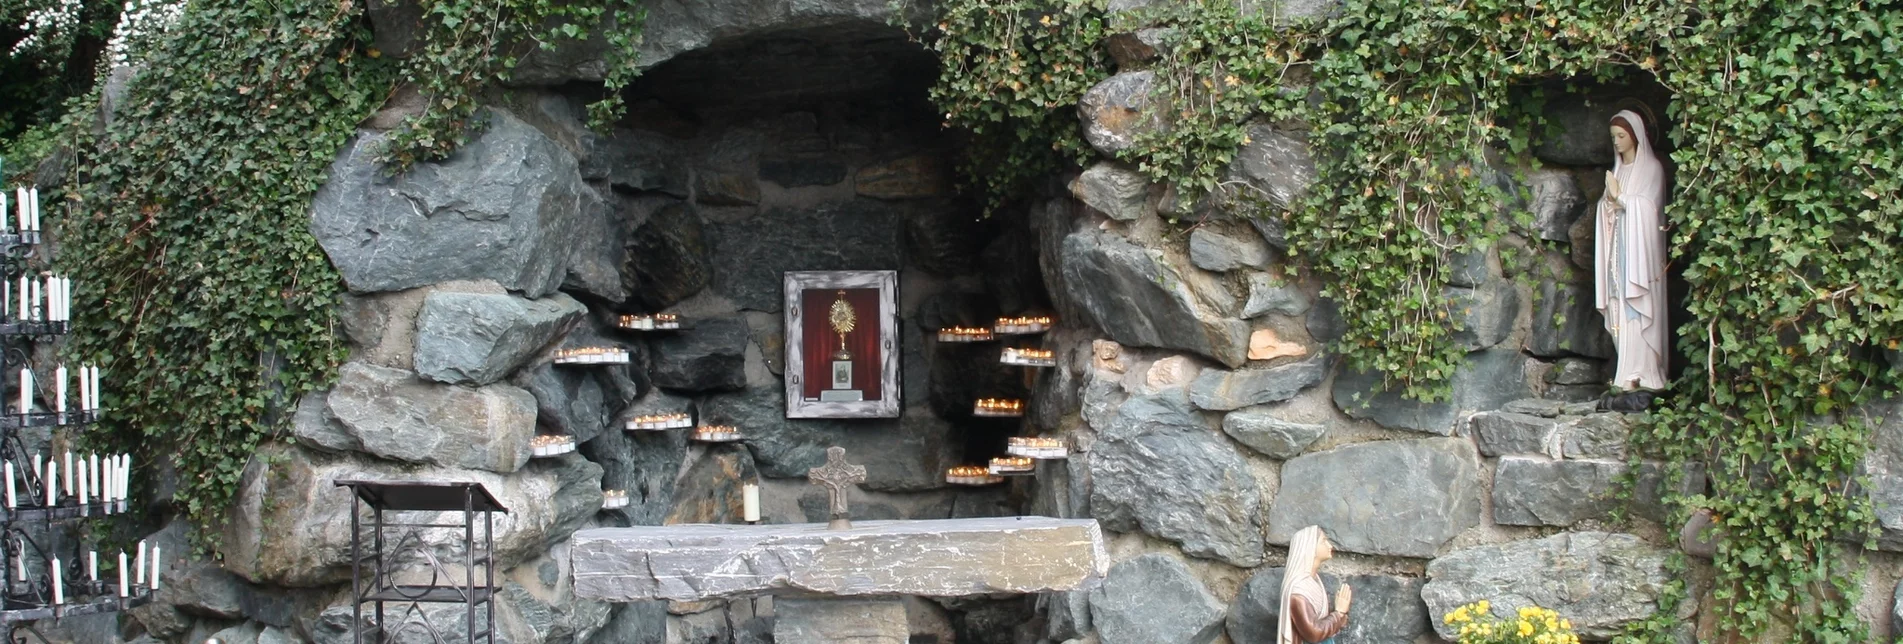 Themen- und Lehrpfad Weg der Heiligen Bernadette - Touren-Impression #1 | © Erlebnisregion Thermen- & Vulkanland